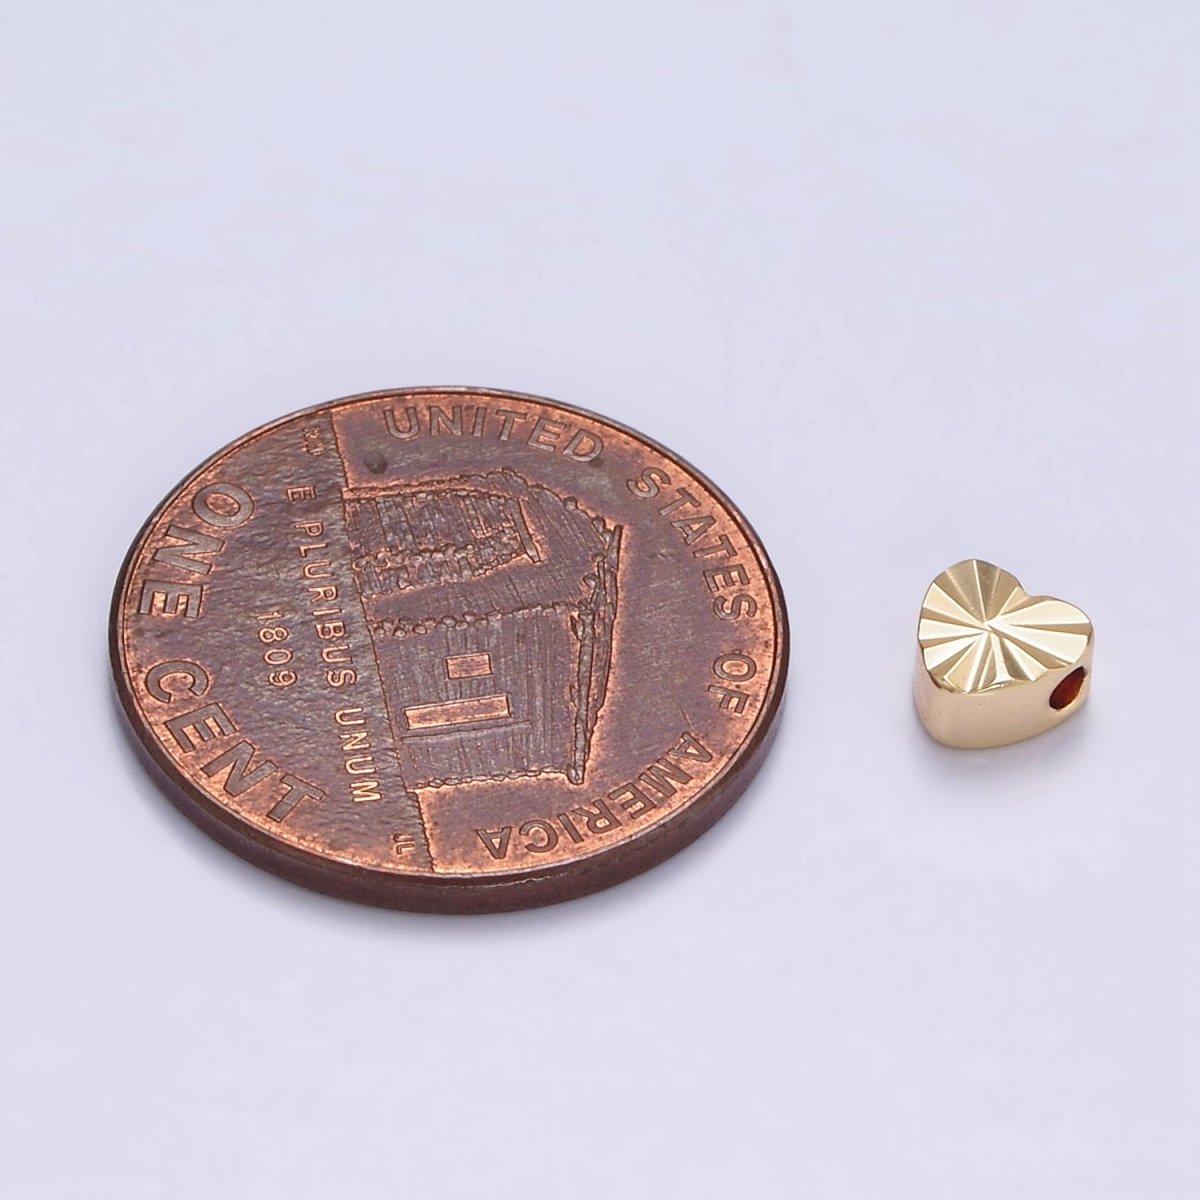 16K Gold Filled 5mm Sunburst Heart Spacer Bead | B-836 - DLUXCA